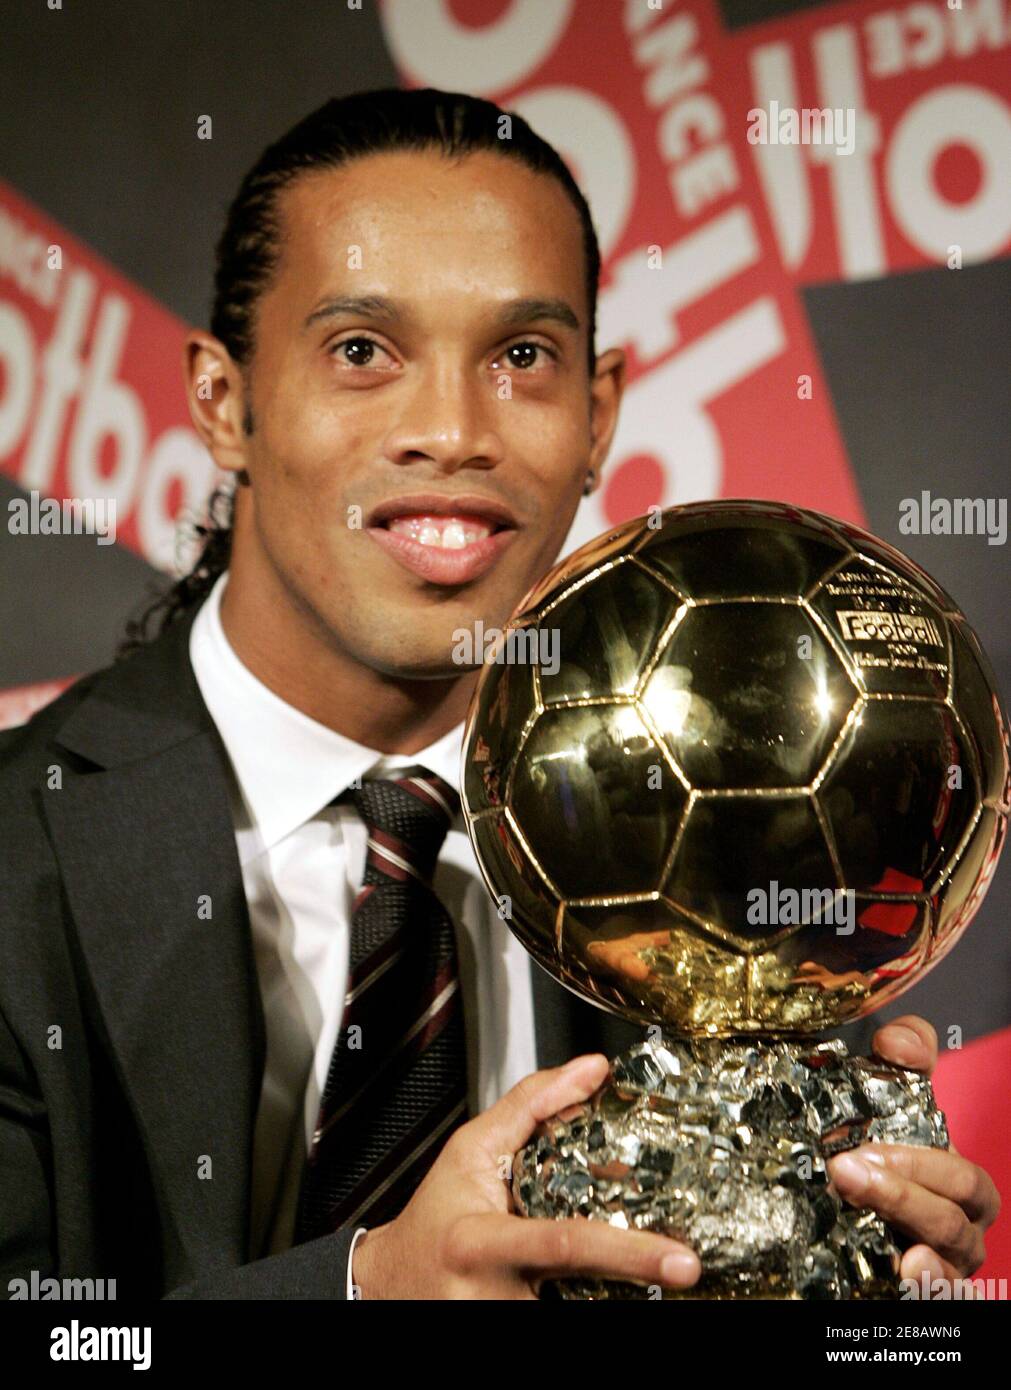 Brasilianische Fußball-star Ronaldinho zeigt seinen Ballon d ' or (Goldener  Ball) Award als Europas Fußballer des Jahres während einer Pressekonferenz  in Paris 28. November 2005. Ronaldinho gewann den Award feiert ihr  50-jähriges